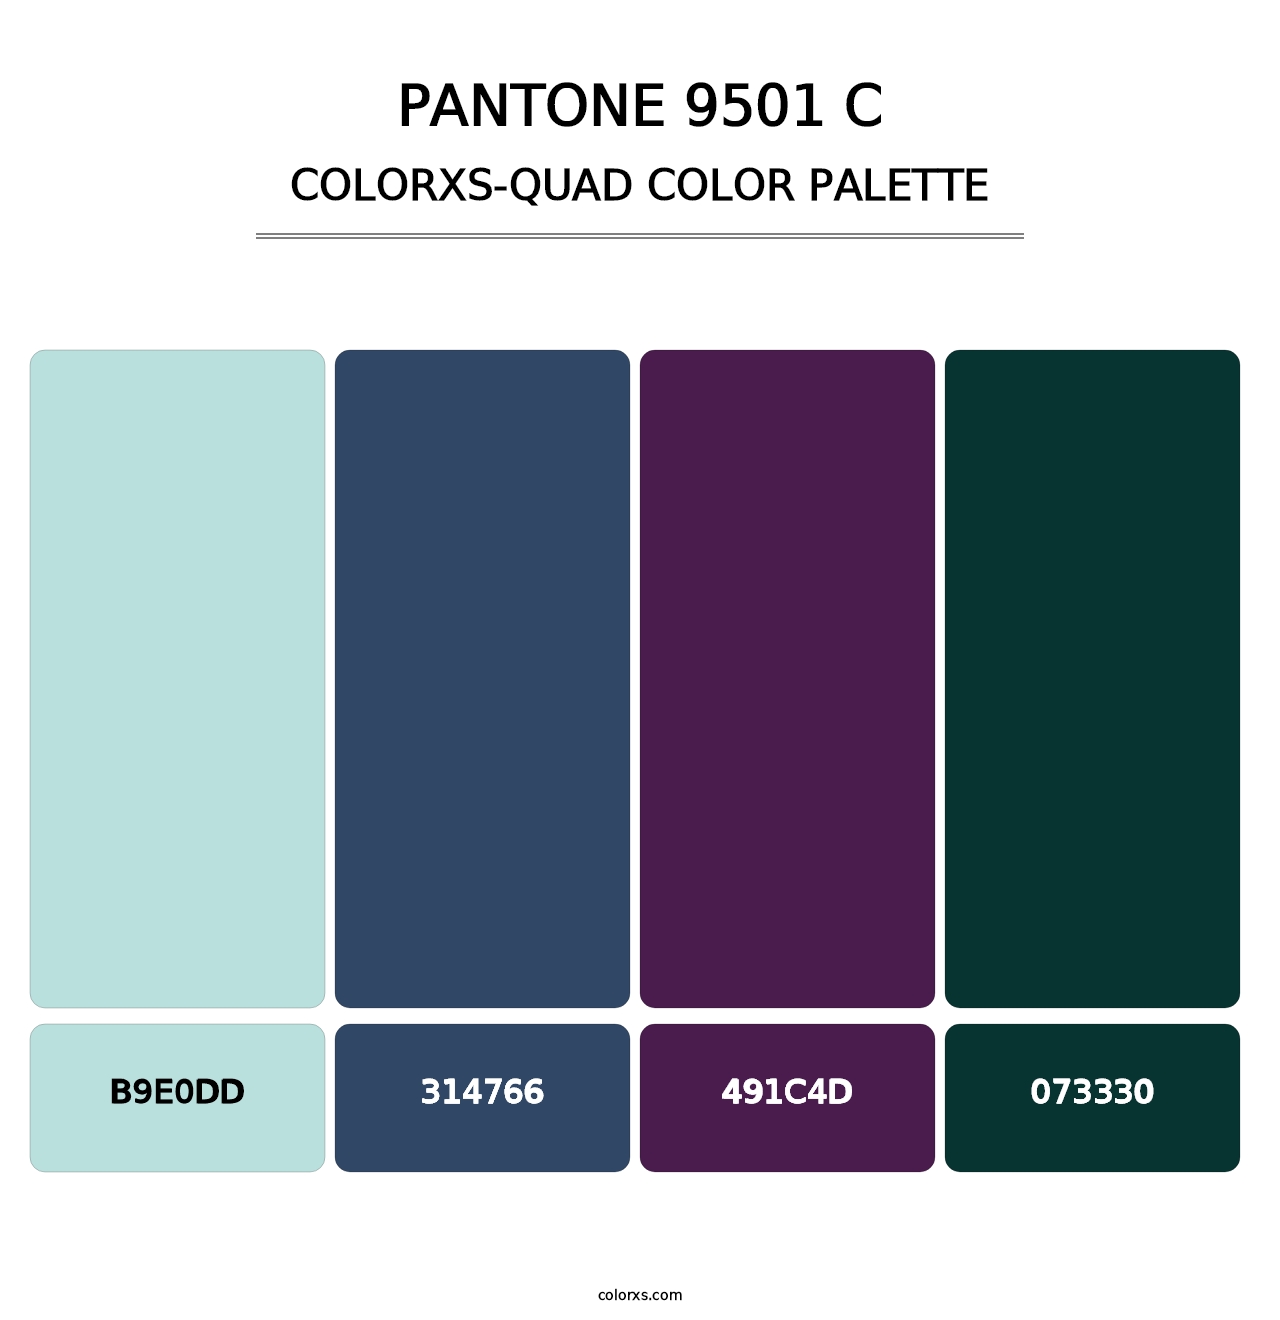 PANTONE 9501 C - Colorxs Quad Palette